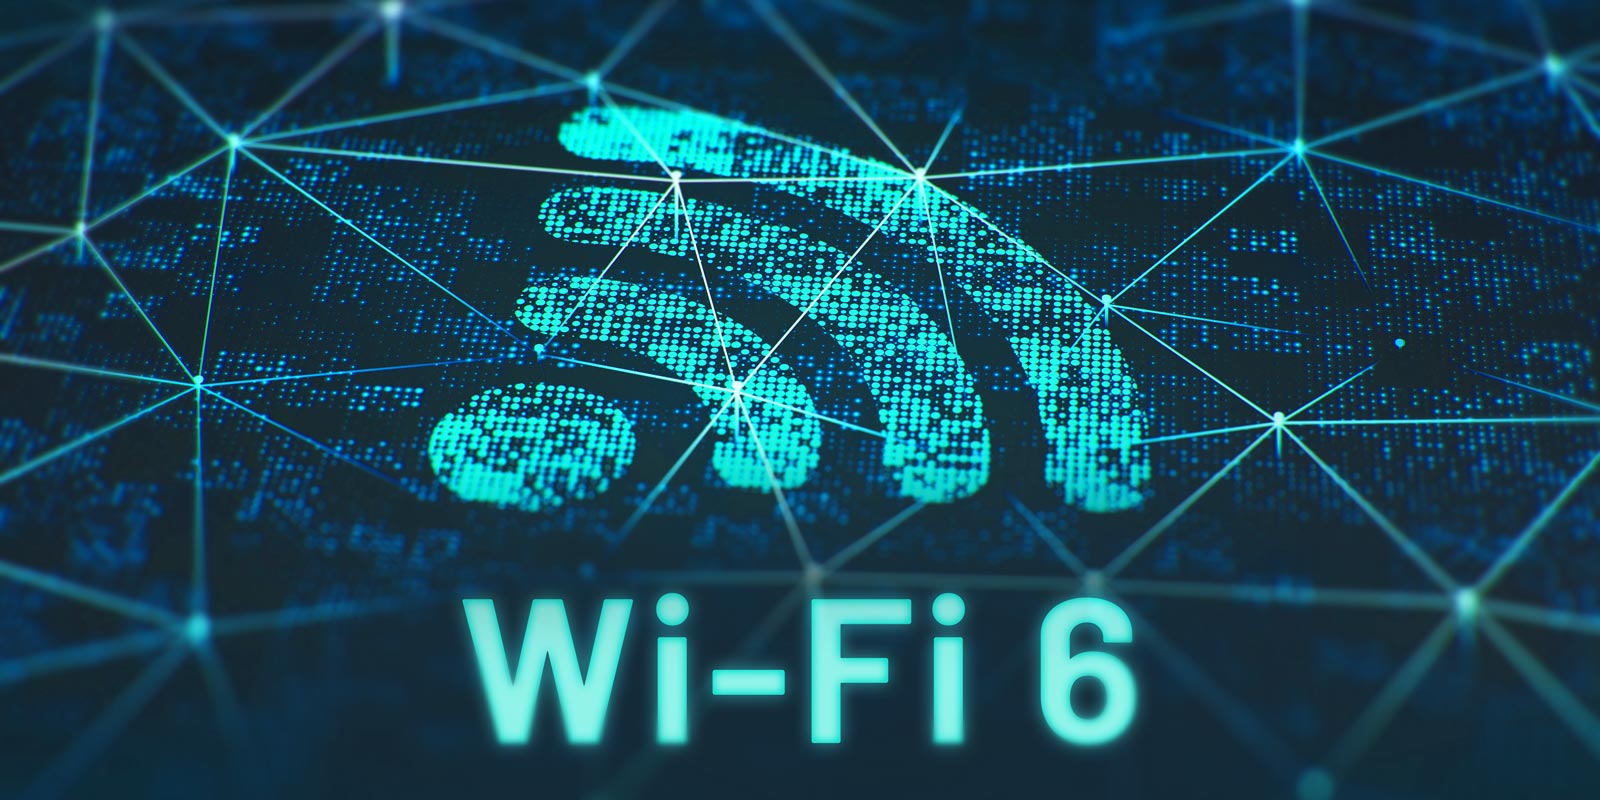 Wi-Fi 6 im Schulnetz – Was sind die Vorteile und was sollte beachtet werden?